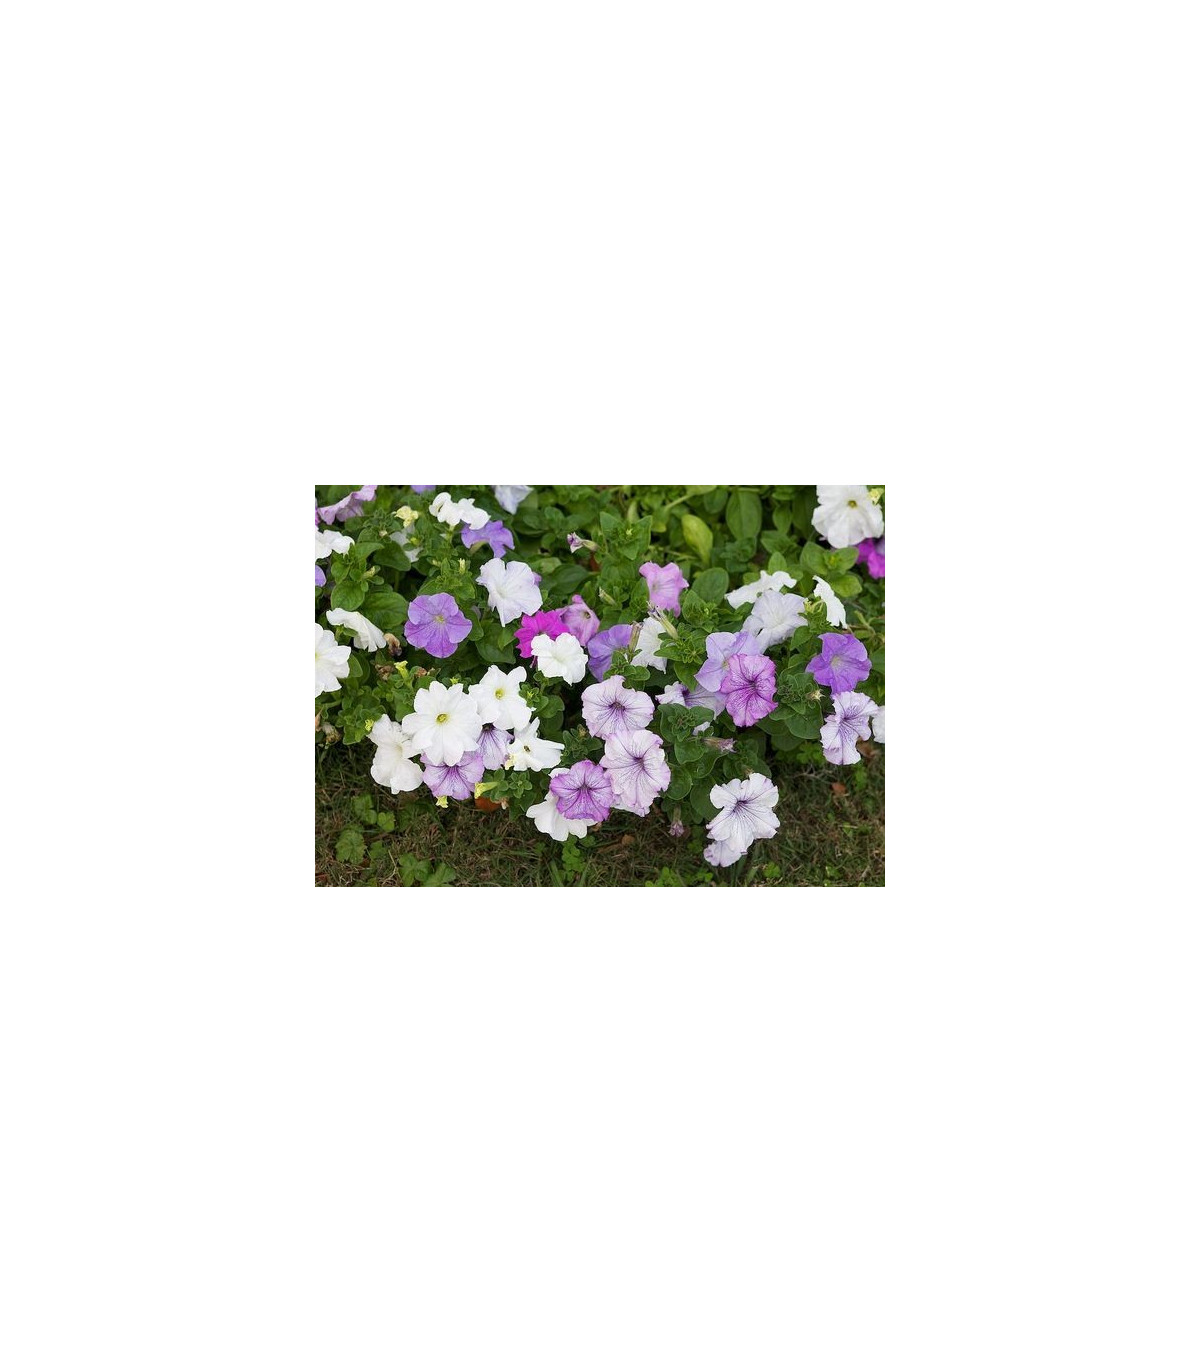 Petúnie velkokvětá nízká - Petunia hybrida nana - prodej semen - 0,1 g